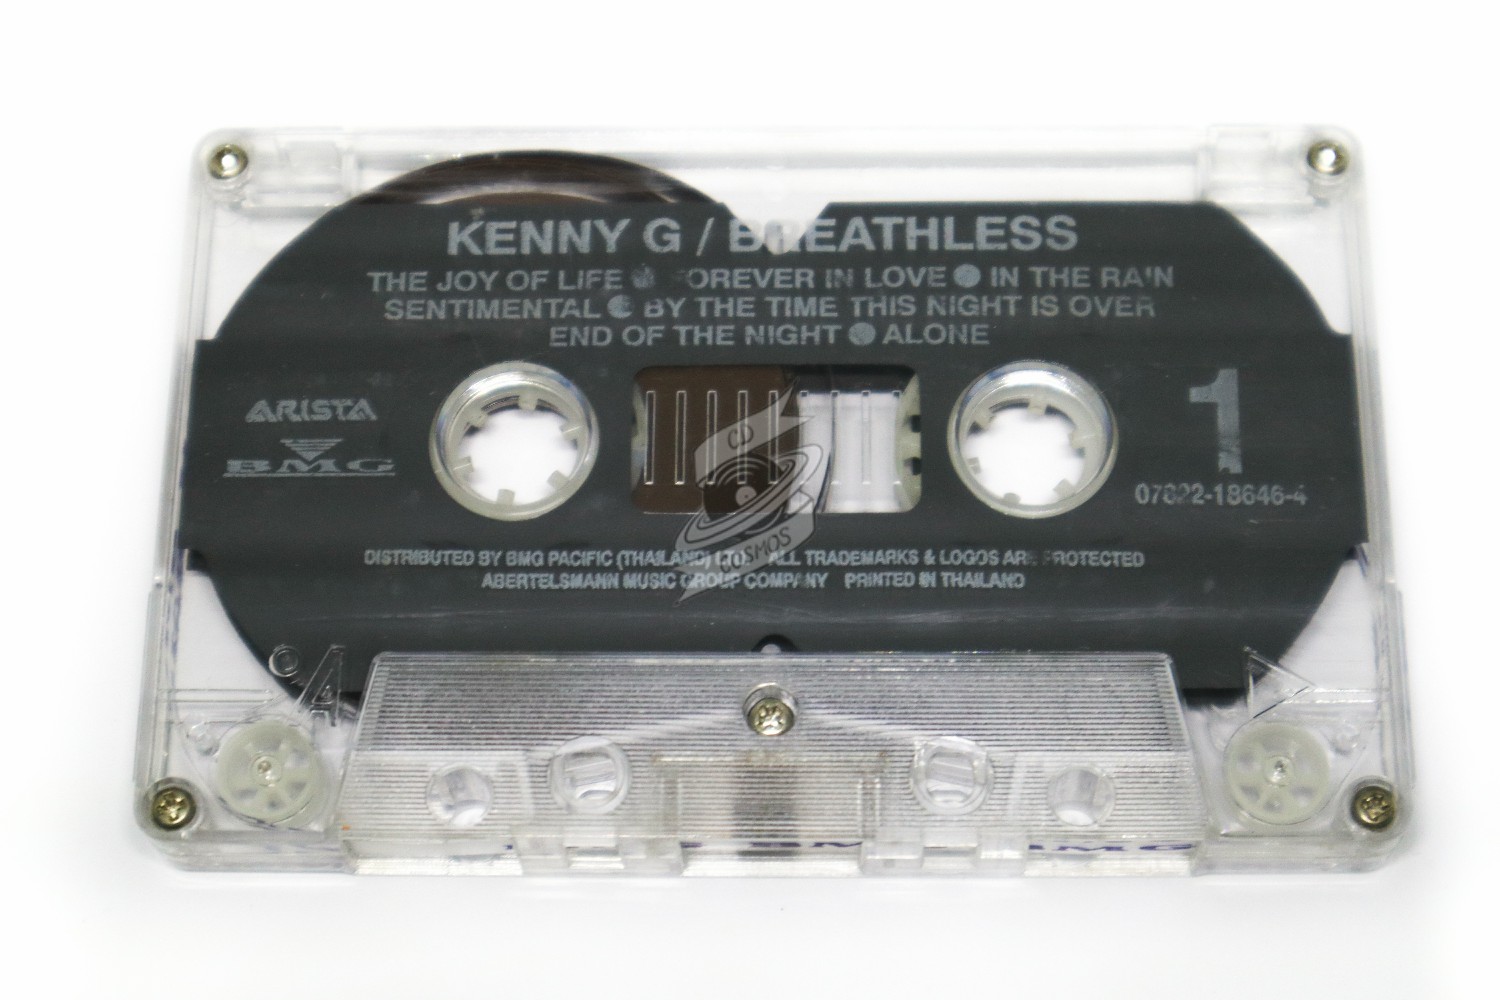 kenny g breathless instrumental